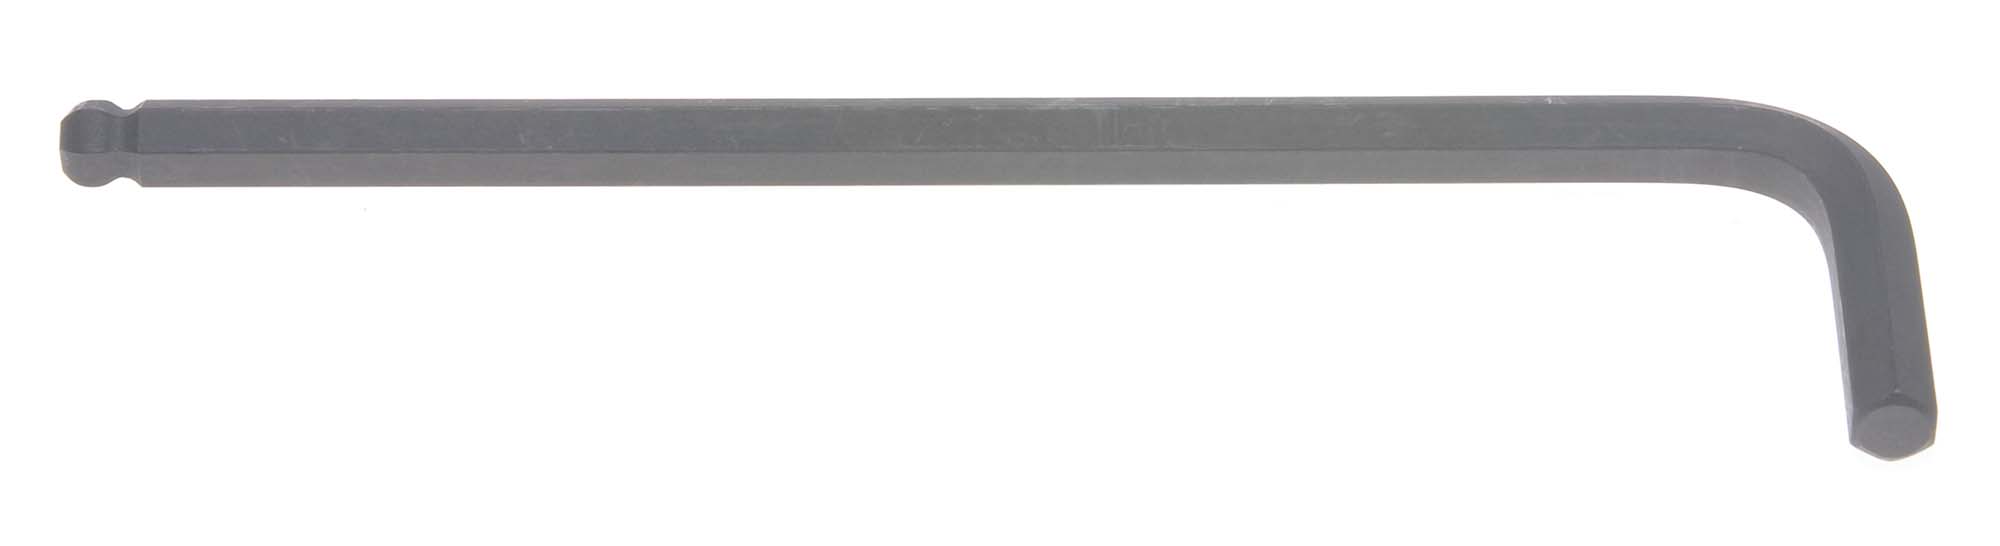 2.5mm Bondhus Balldriver L-Wrench Hex Key